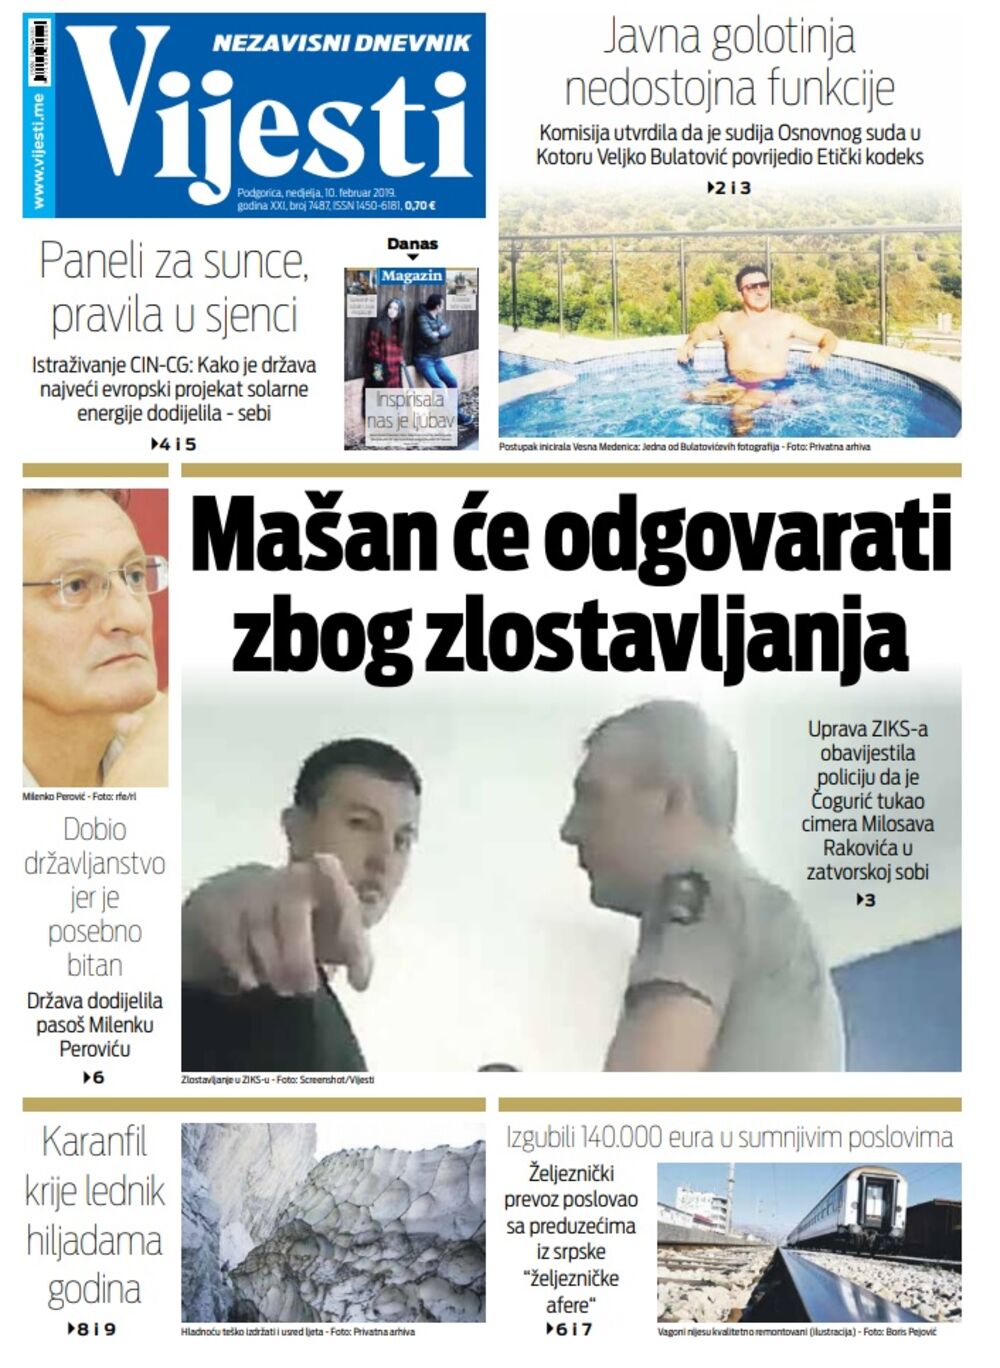 Naslovna strana "Vijesti" za 10. februar, Foto: Vijesti